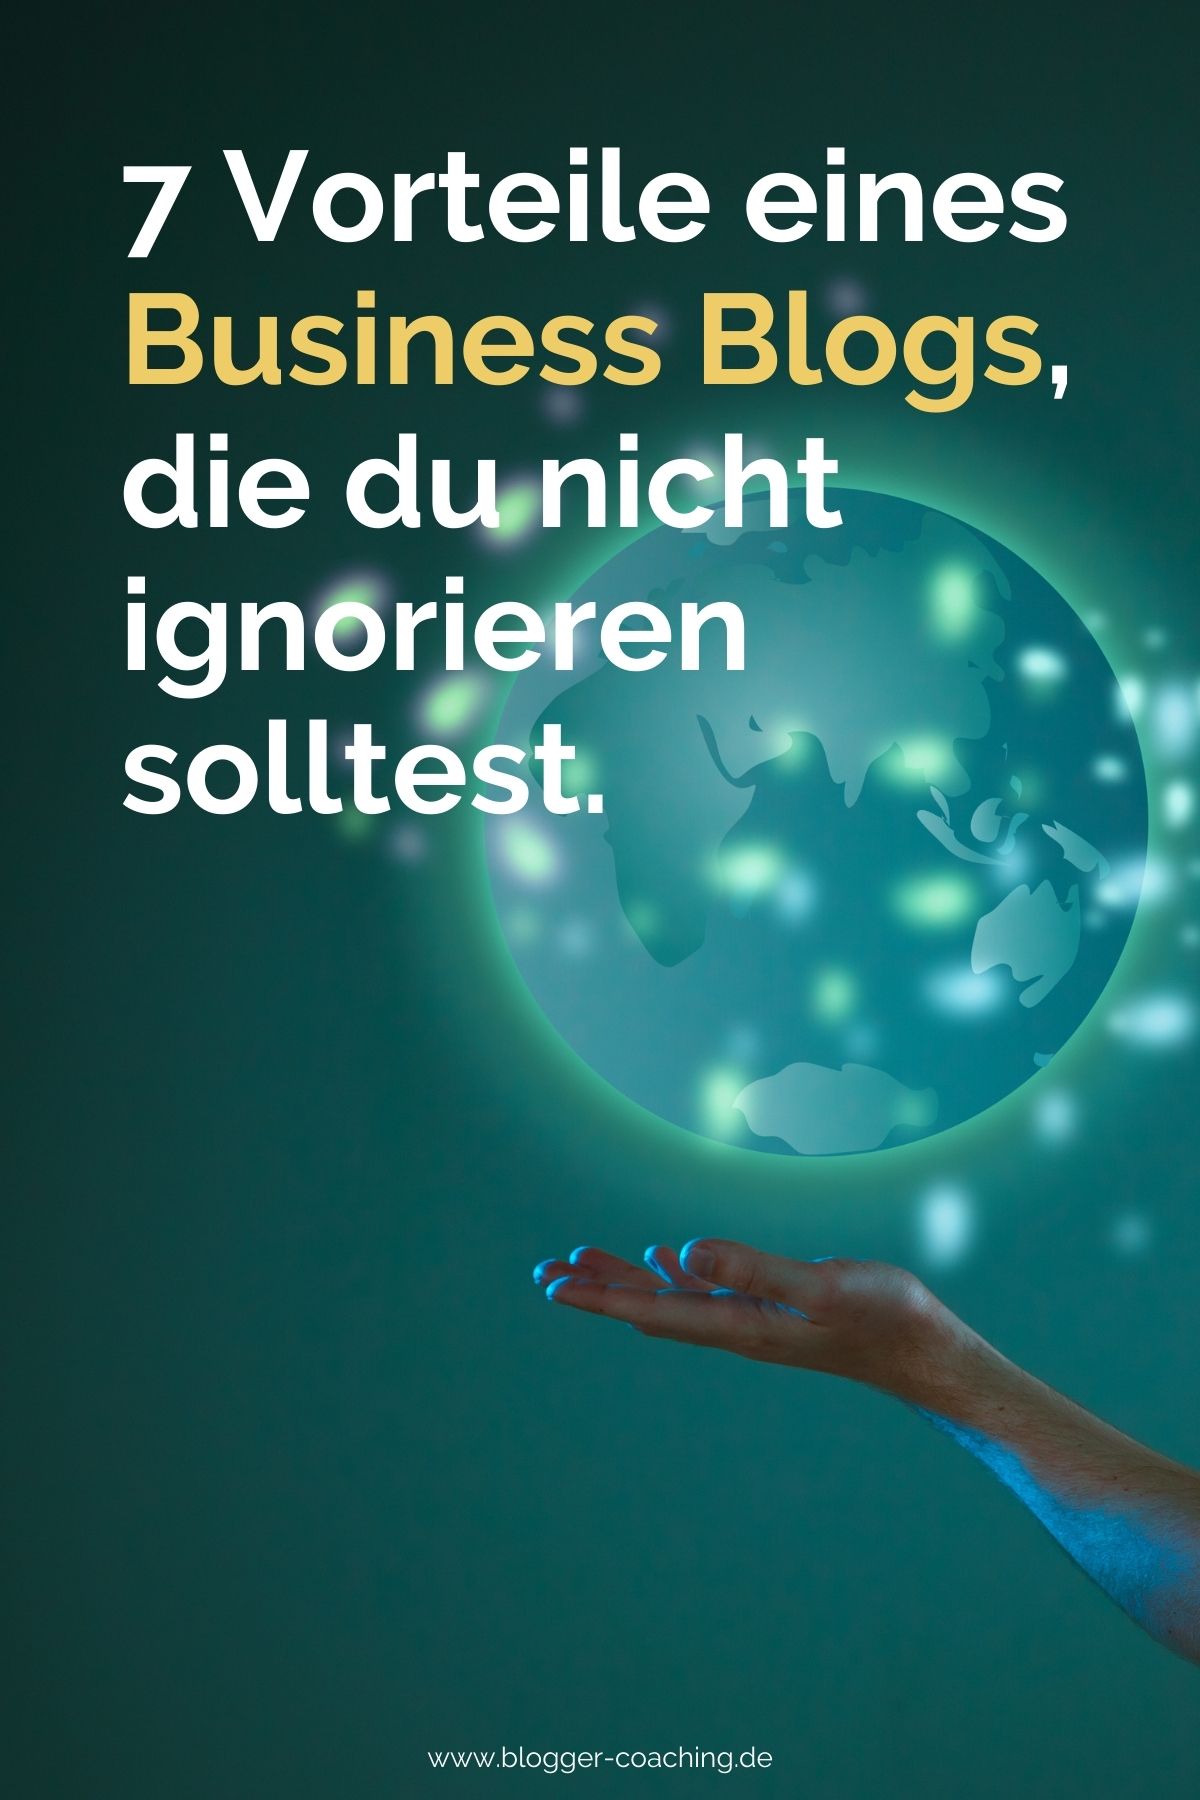 Business Blog: 7 Vorteile eines Blogs für dein Unternehmen | Blogger-Coaching.de